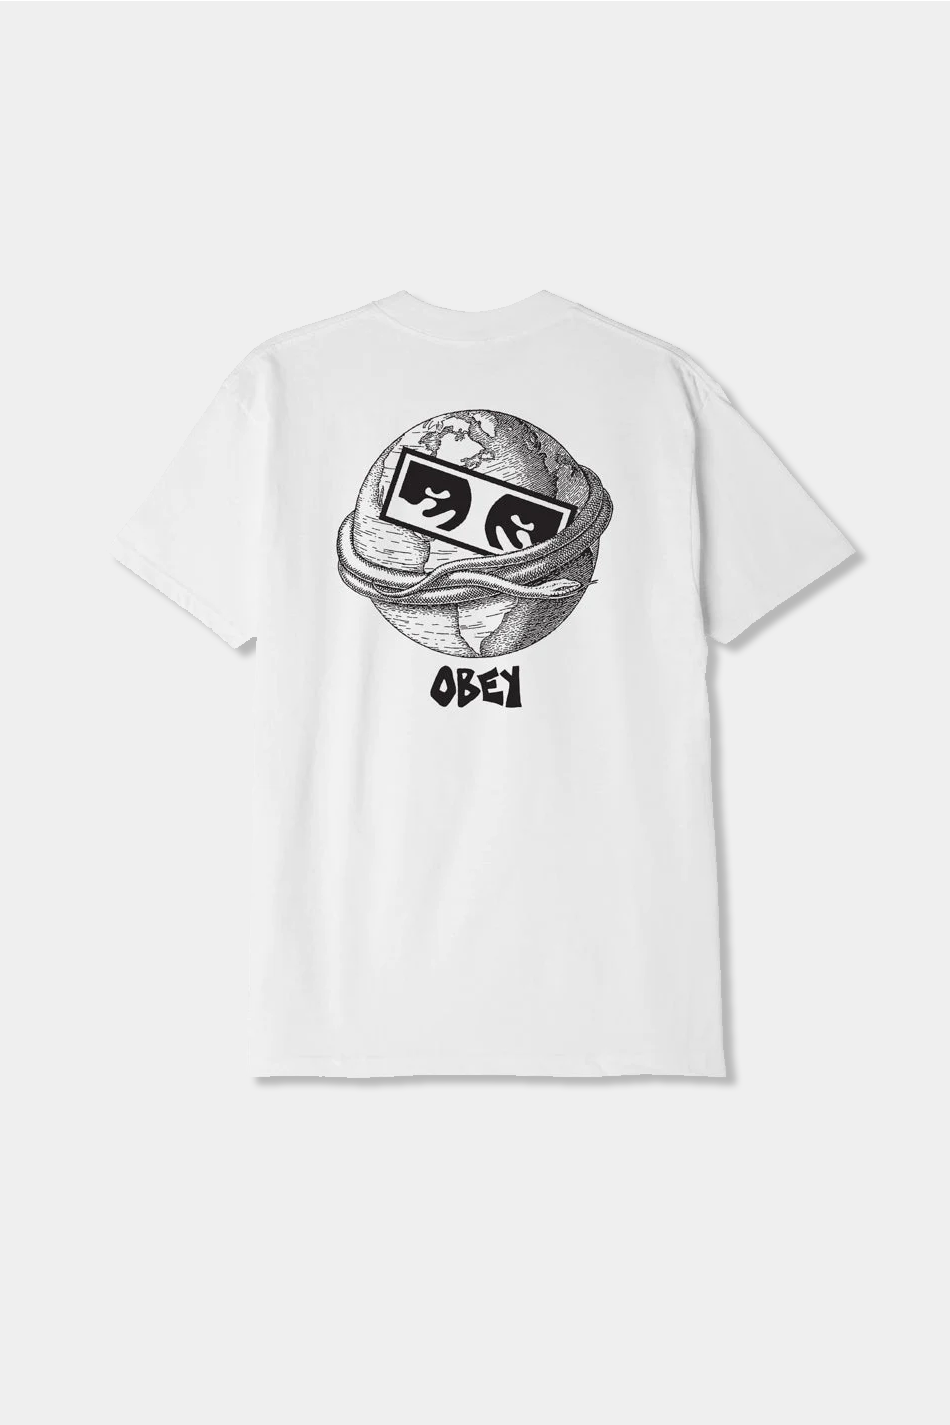 T-shirt Obey Ouroboros White